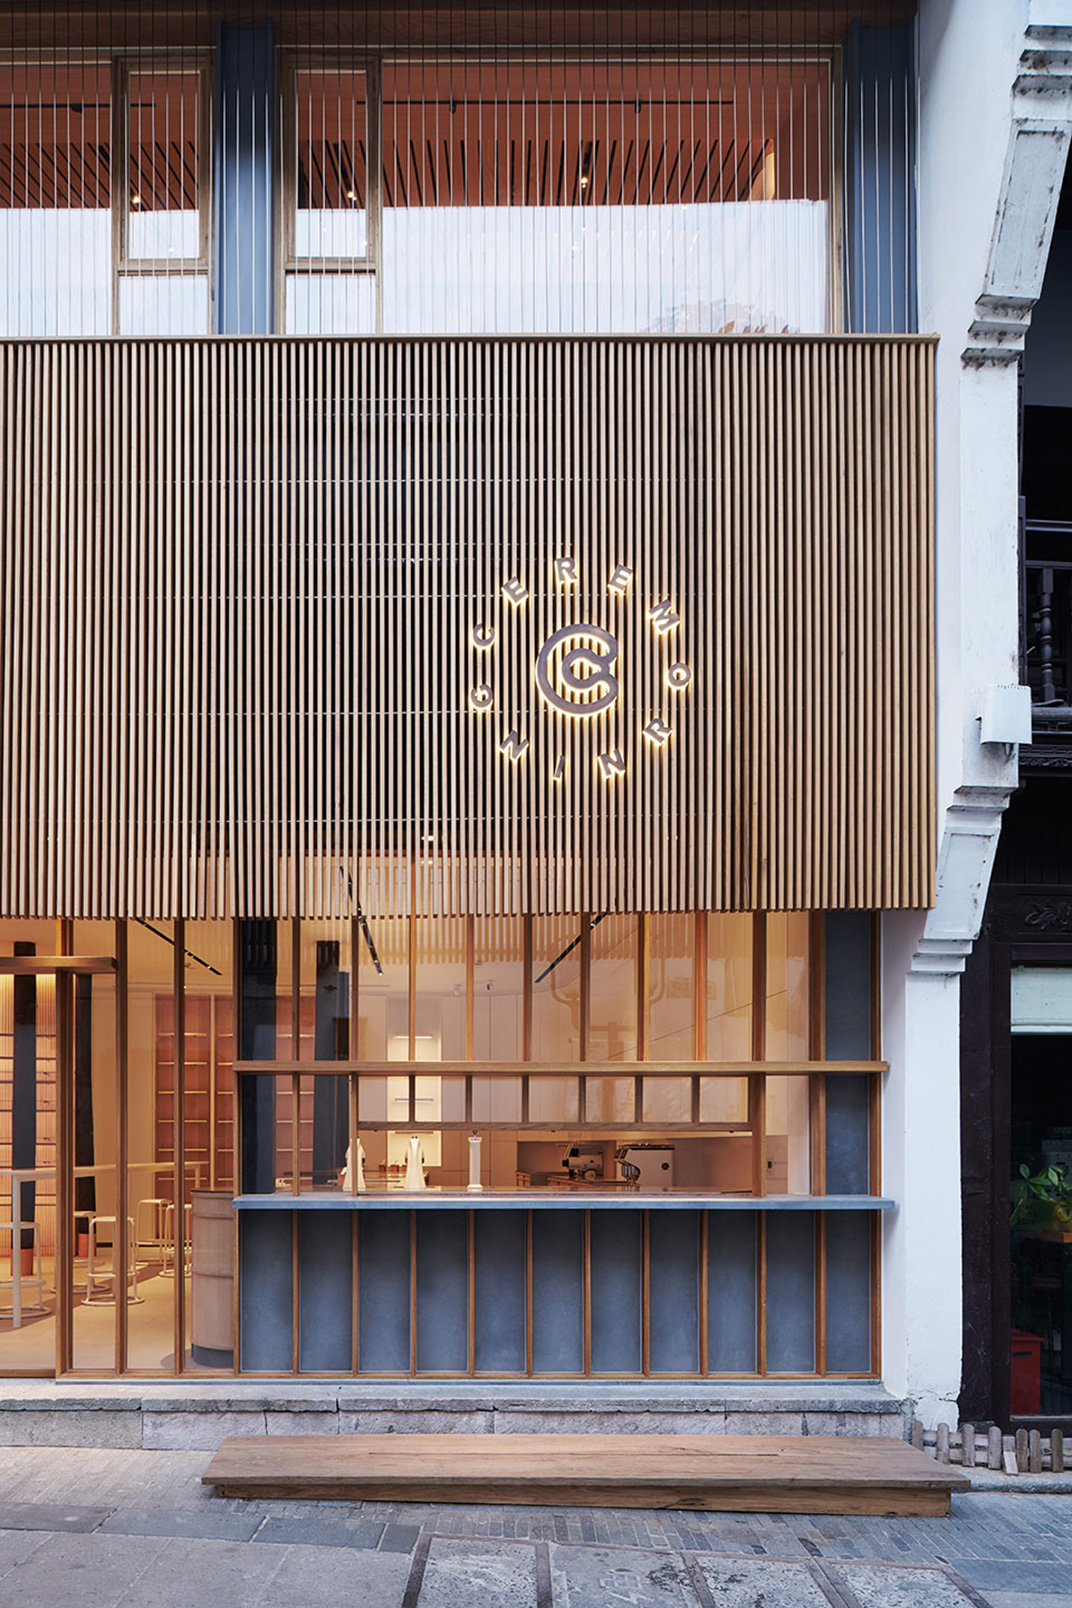 Random艺术空间轻食咖啡馆 杭州 木头 轻食 咖啡馆 曲面 古建筑 餐厅LOGO VI设计 空间设计 视觉餐饮